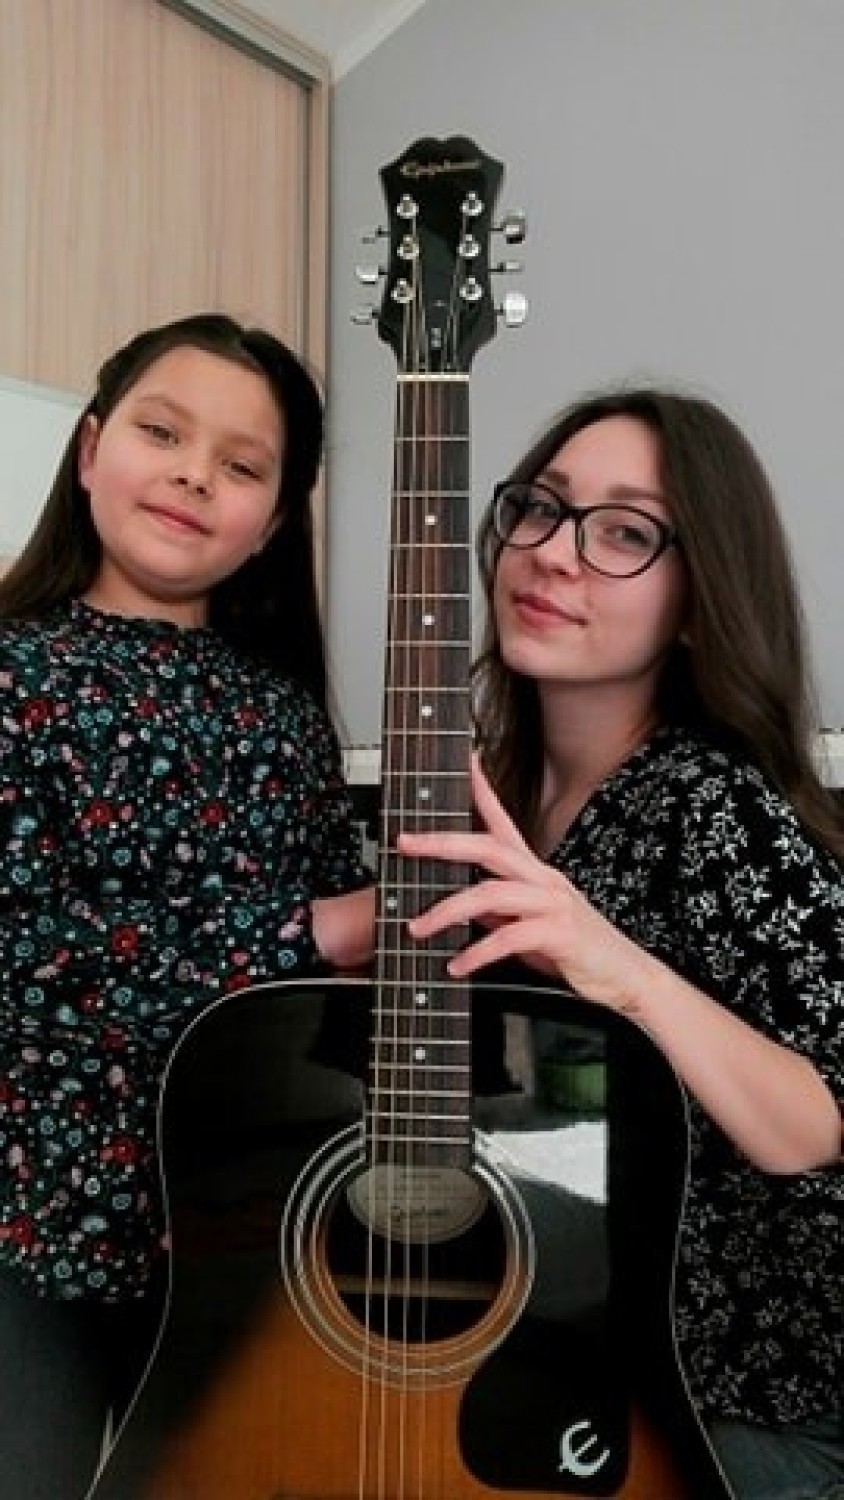 Siostry z Gorzowa nagrały piosenkę o koronawirusie